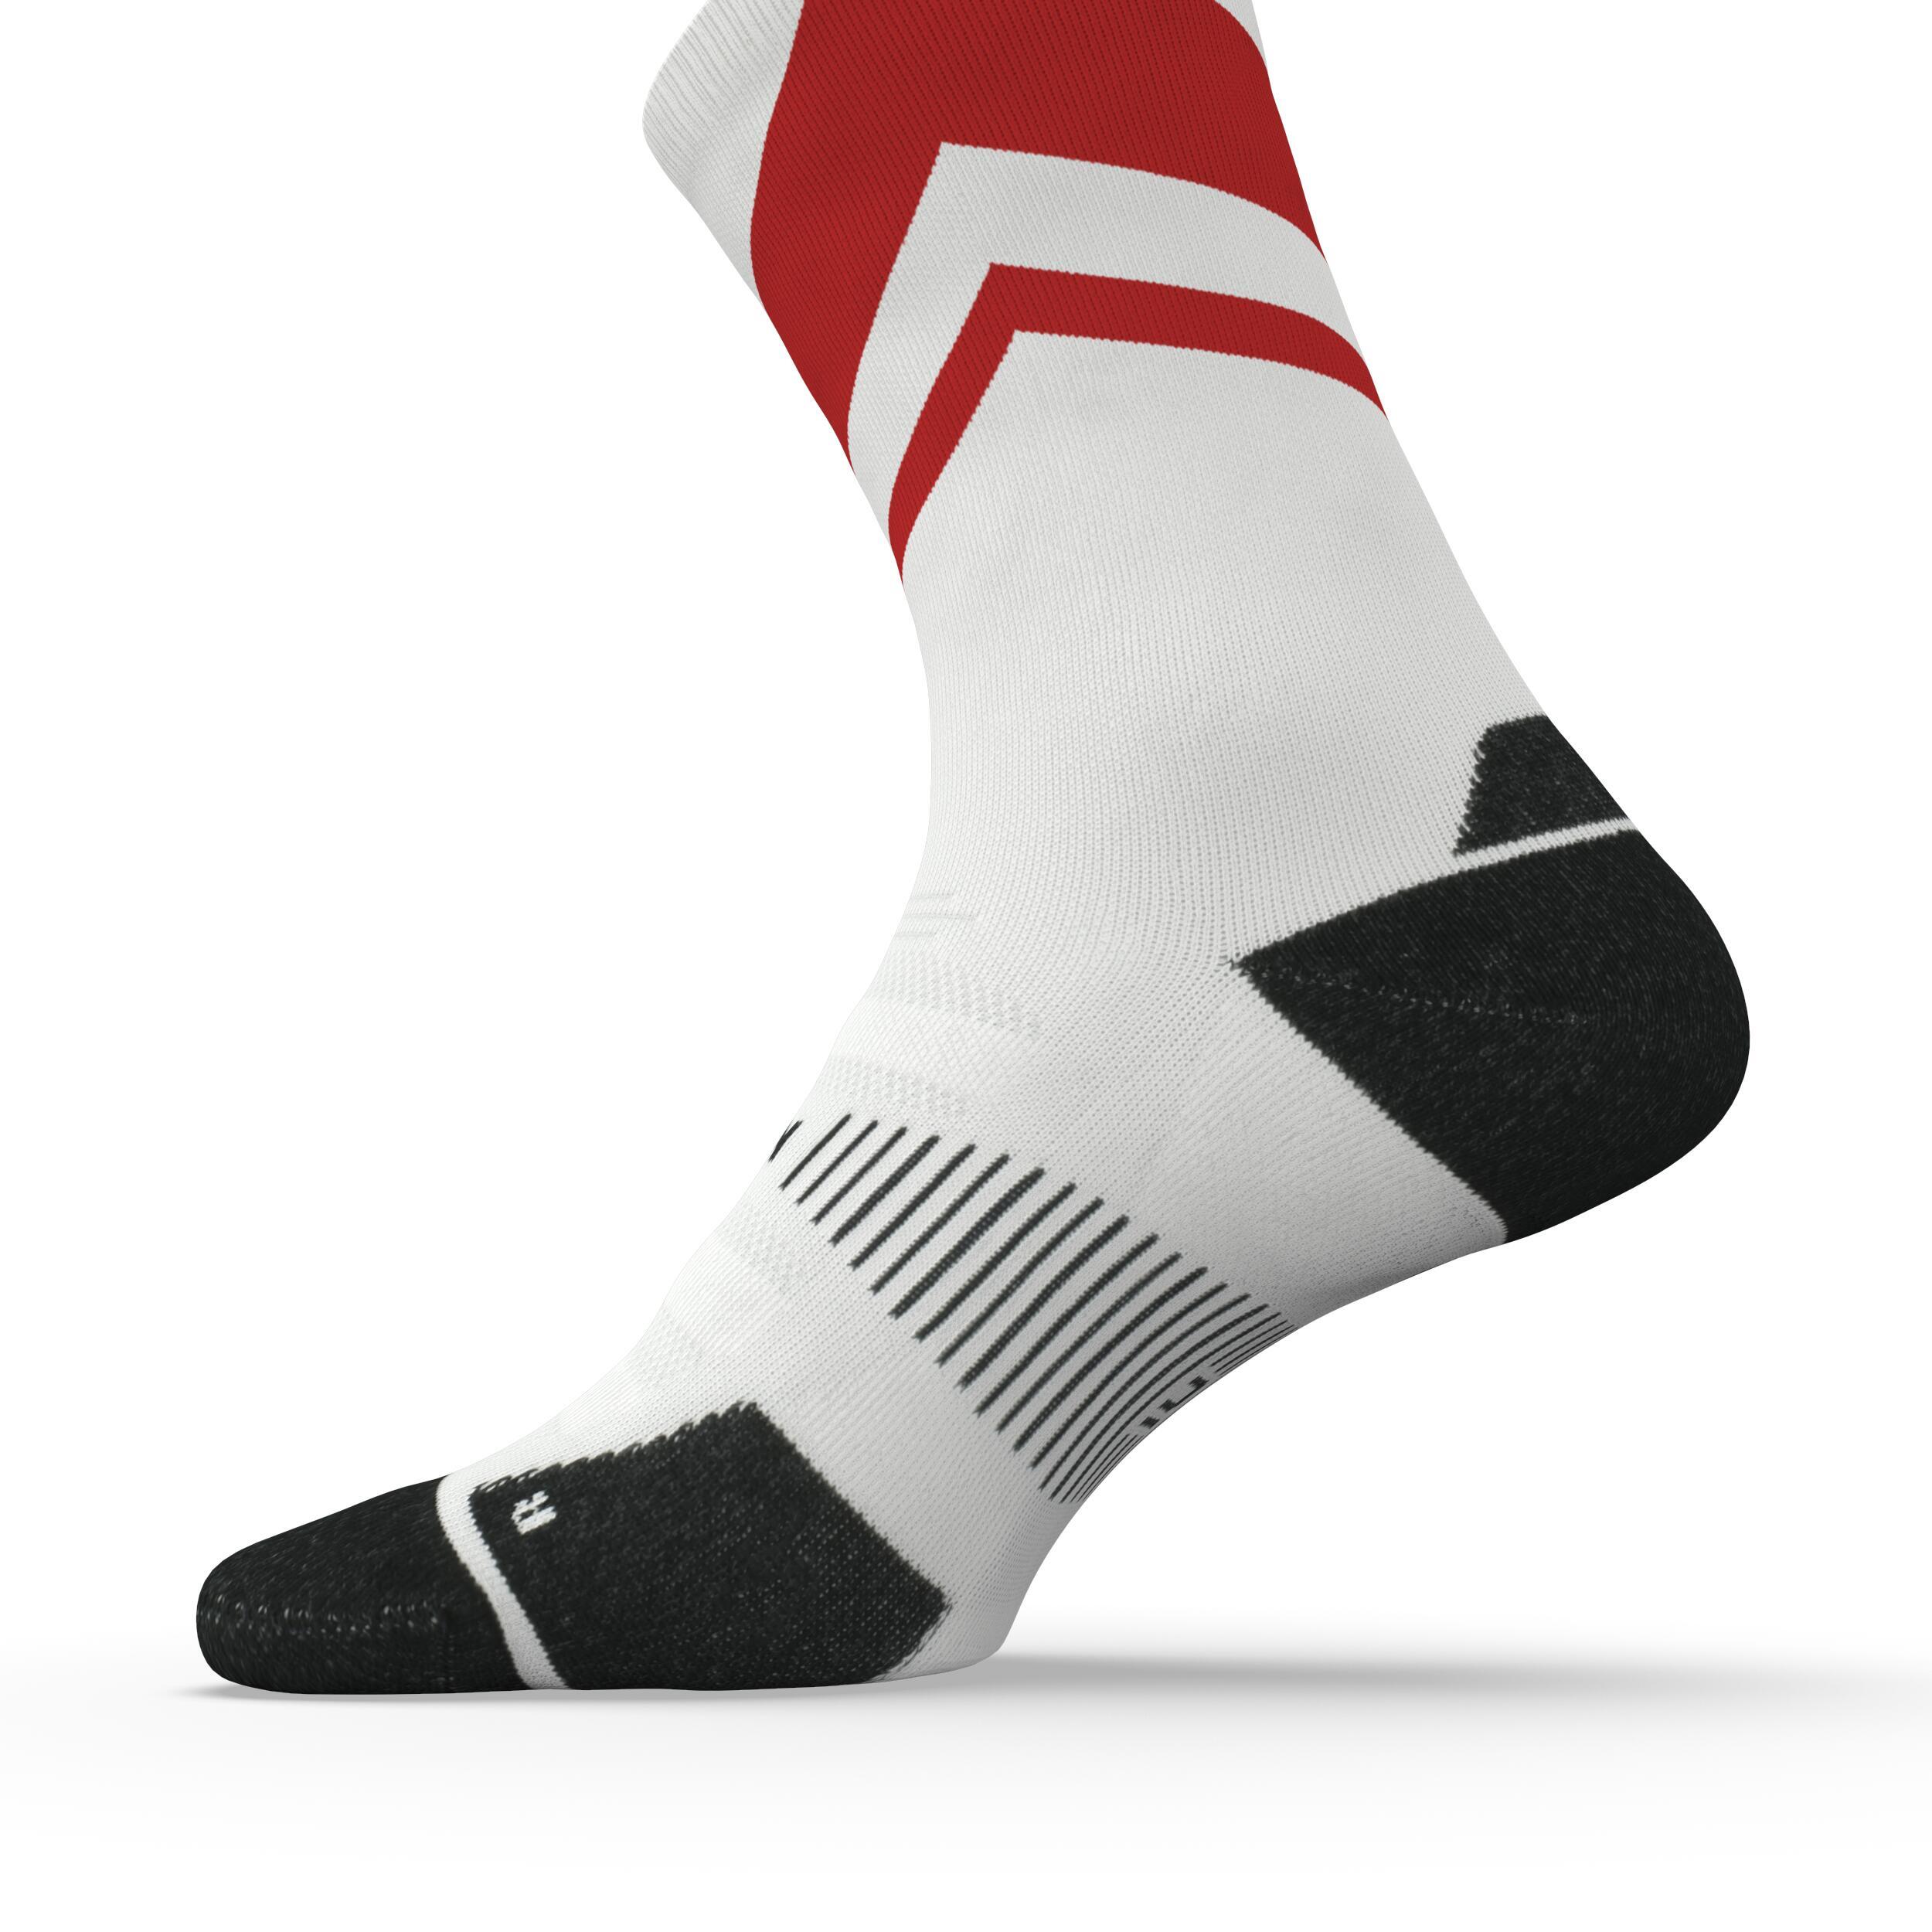 Run900 Mid-Calf Thick Running Socks - White/Red 5/7